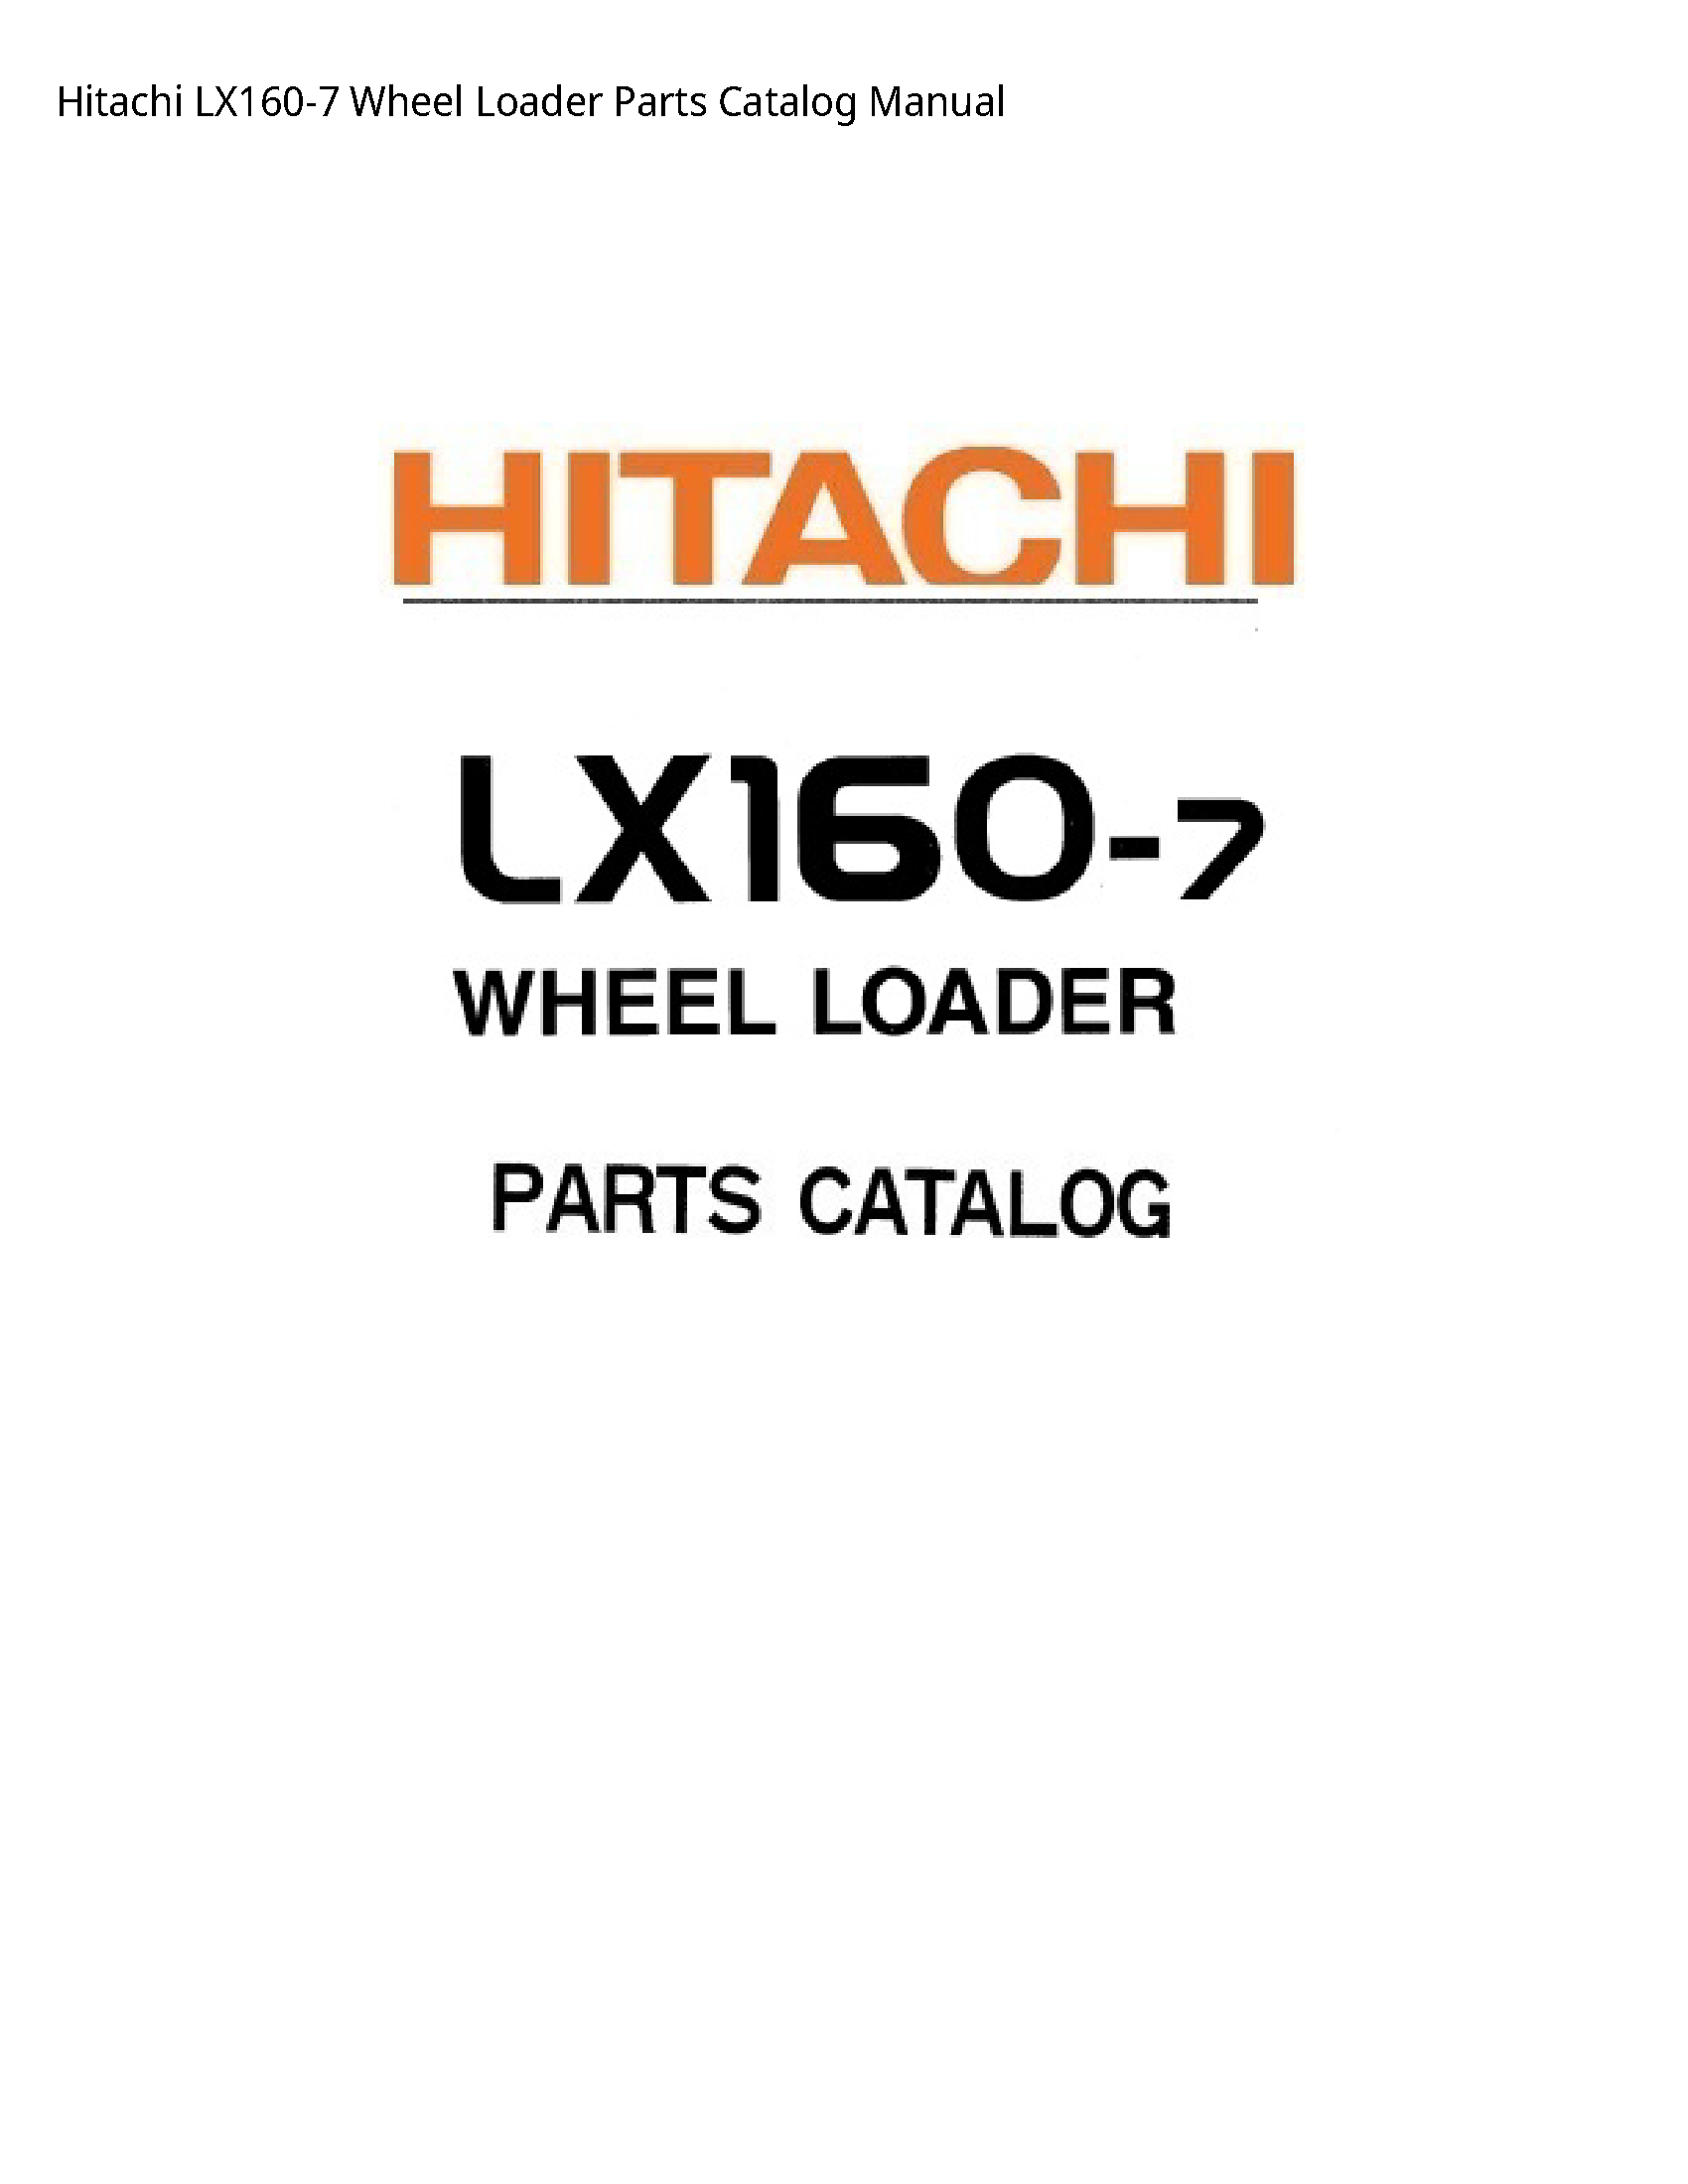 Hitachi LX160-7 Wheel Loader Parts Catalog manual